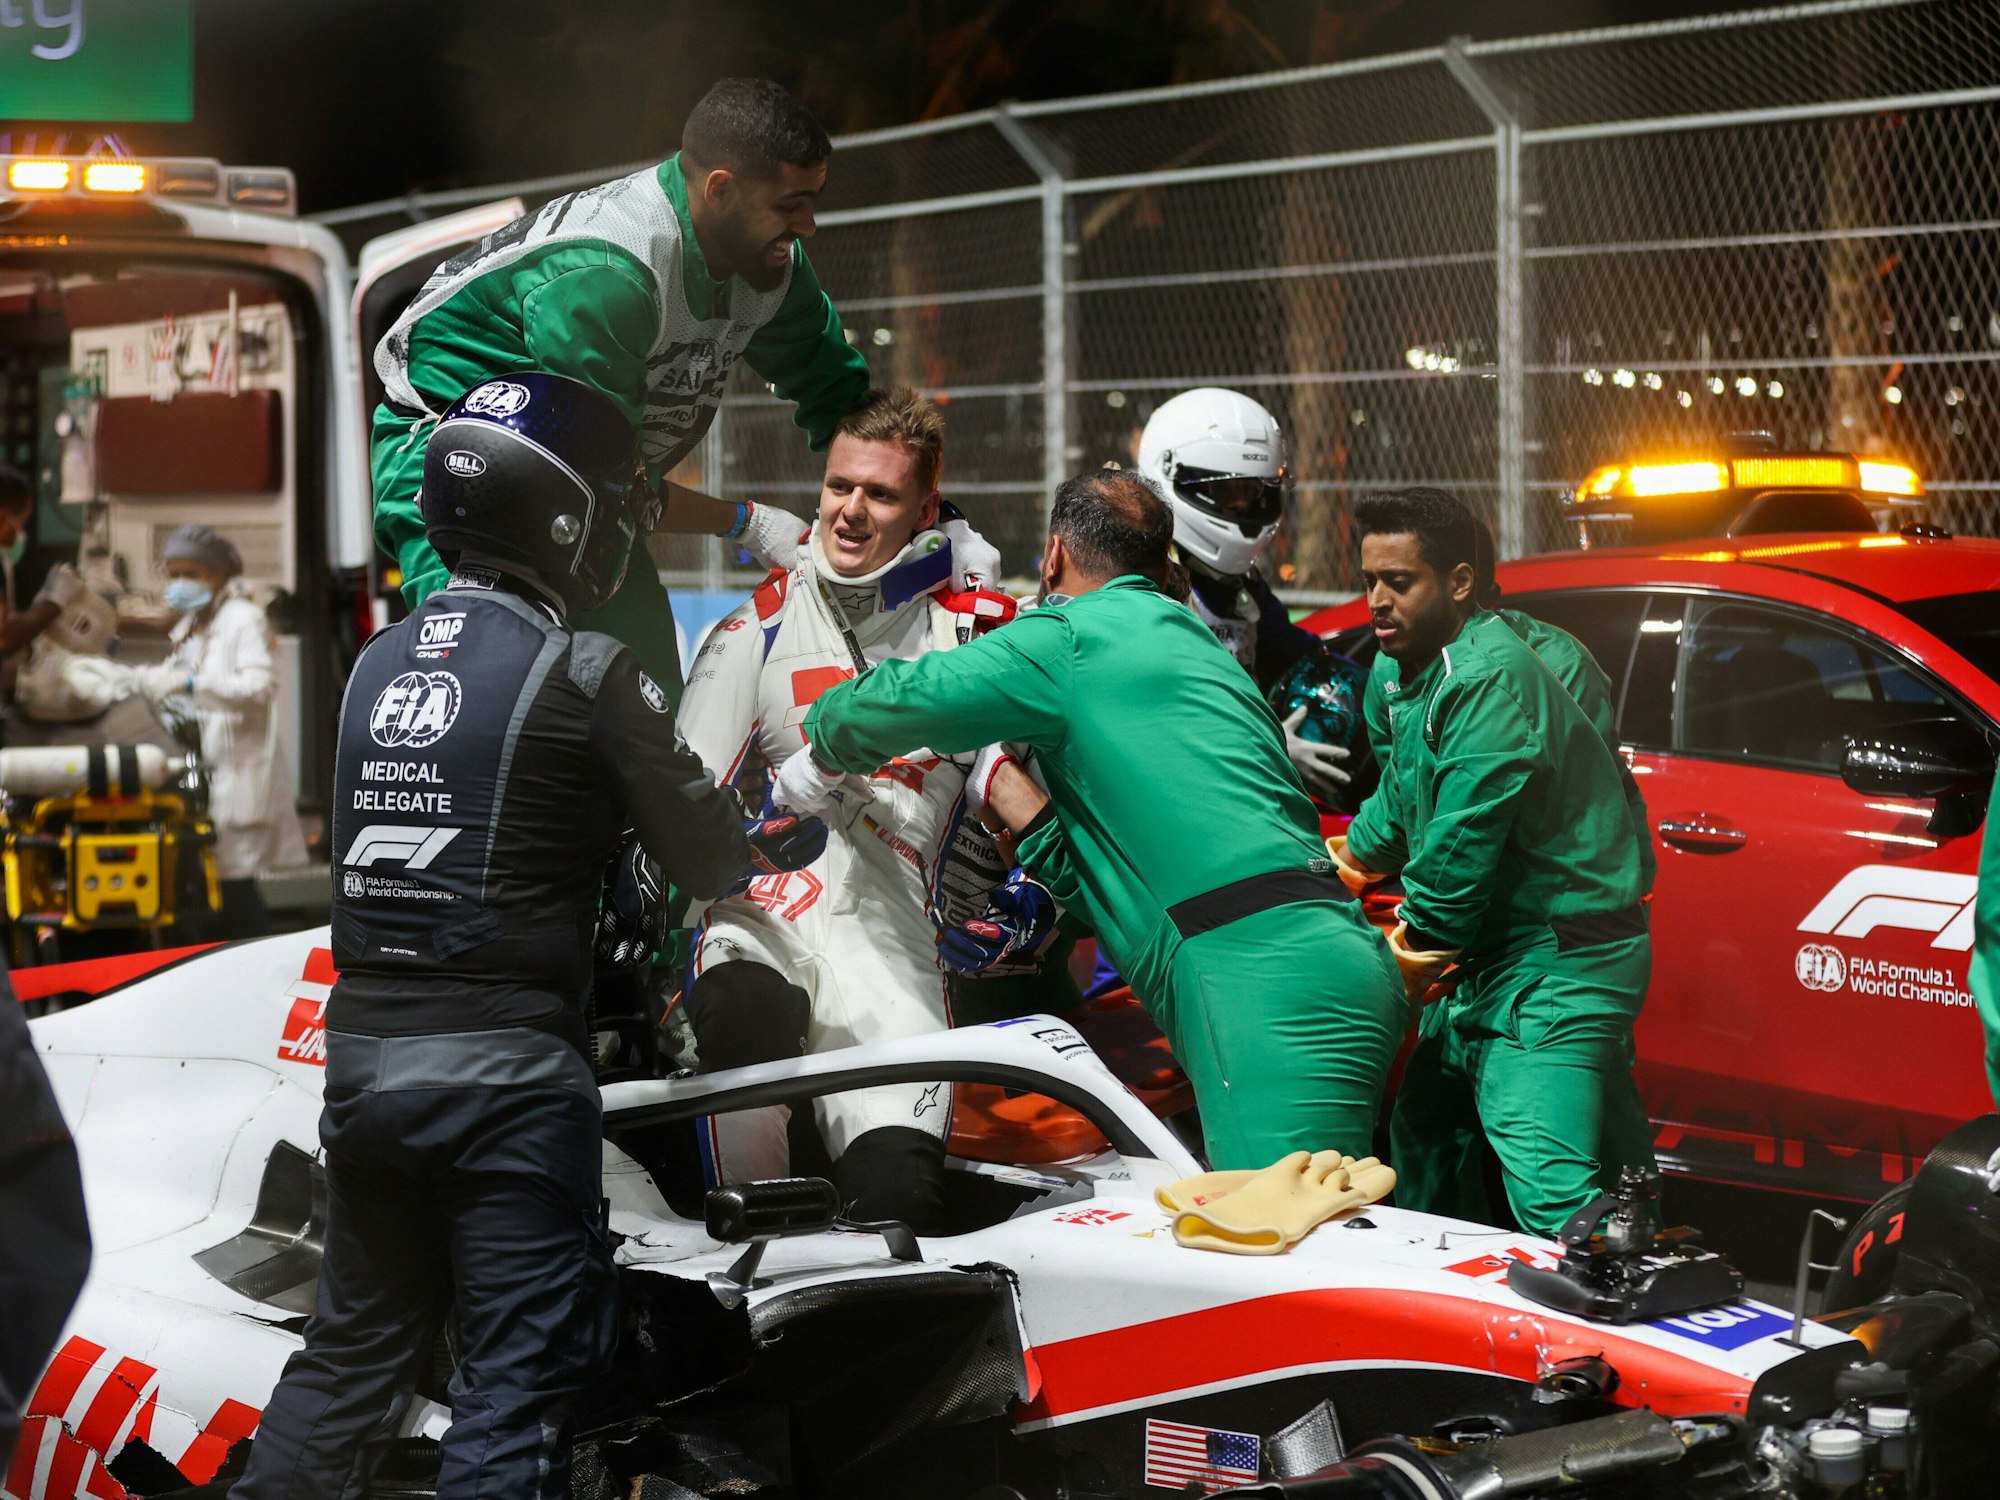 Mick Schumacher wird mit Halskrause aus seinem Haas-Boliden gezogen.